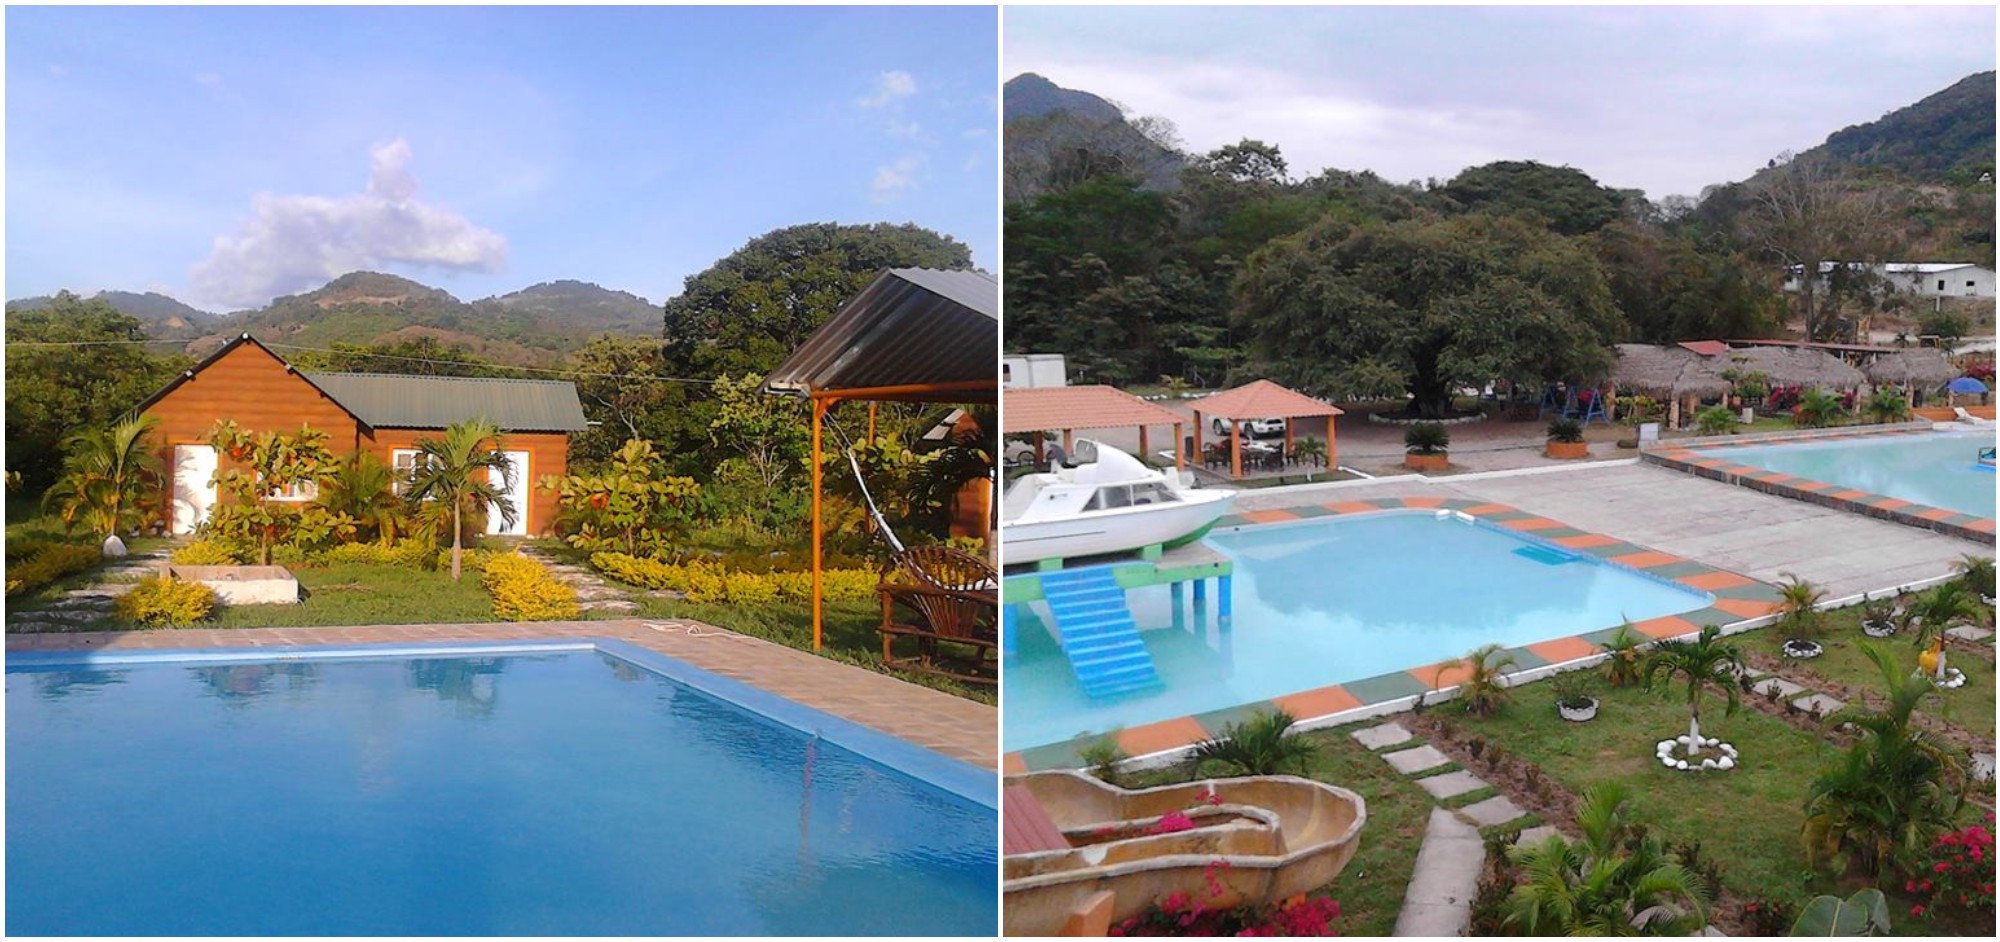 Aquapark y Club Campestre El Yate reinician operaciones en Honduras